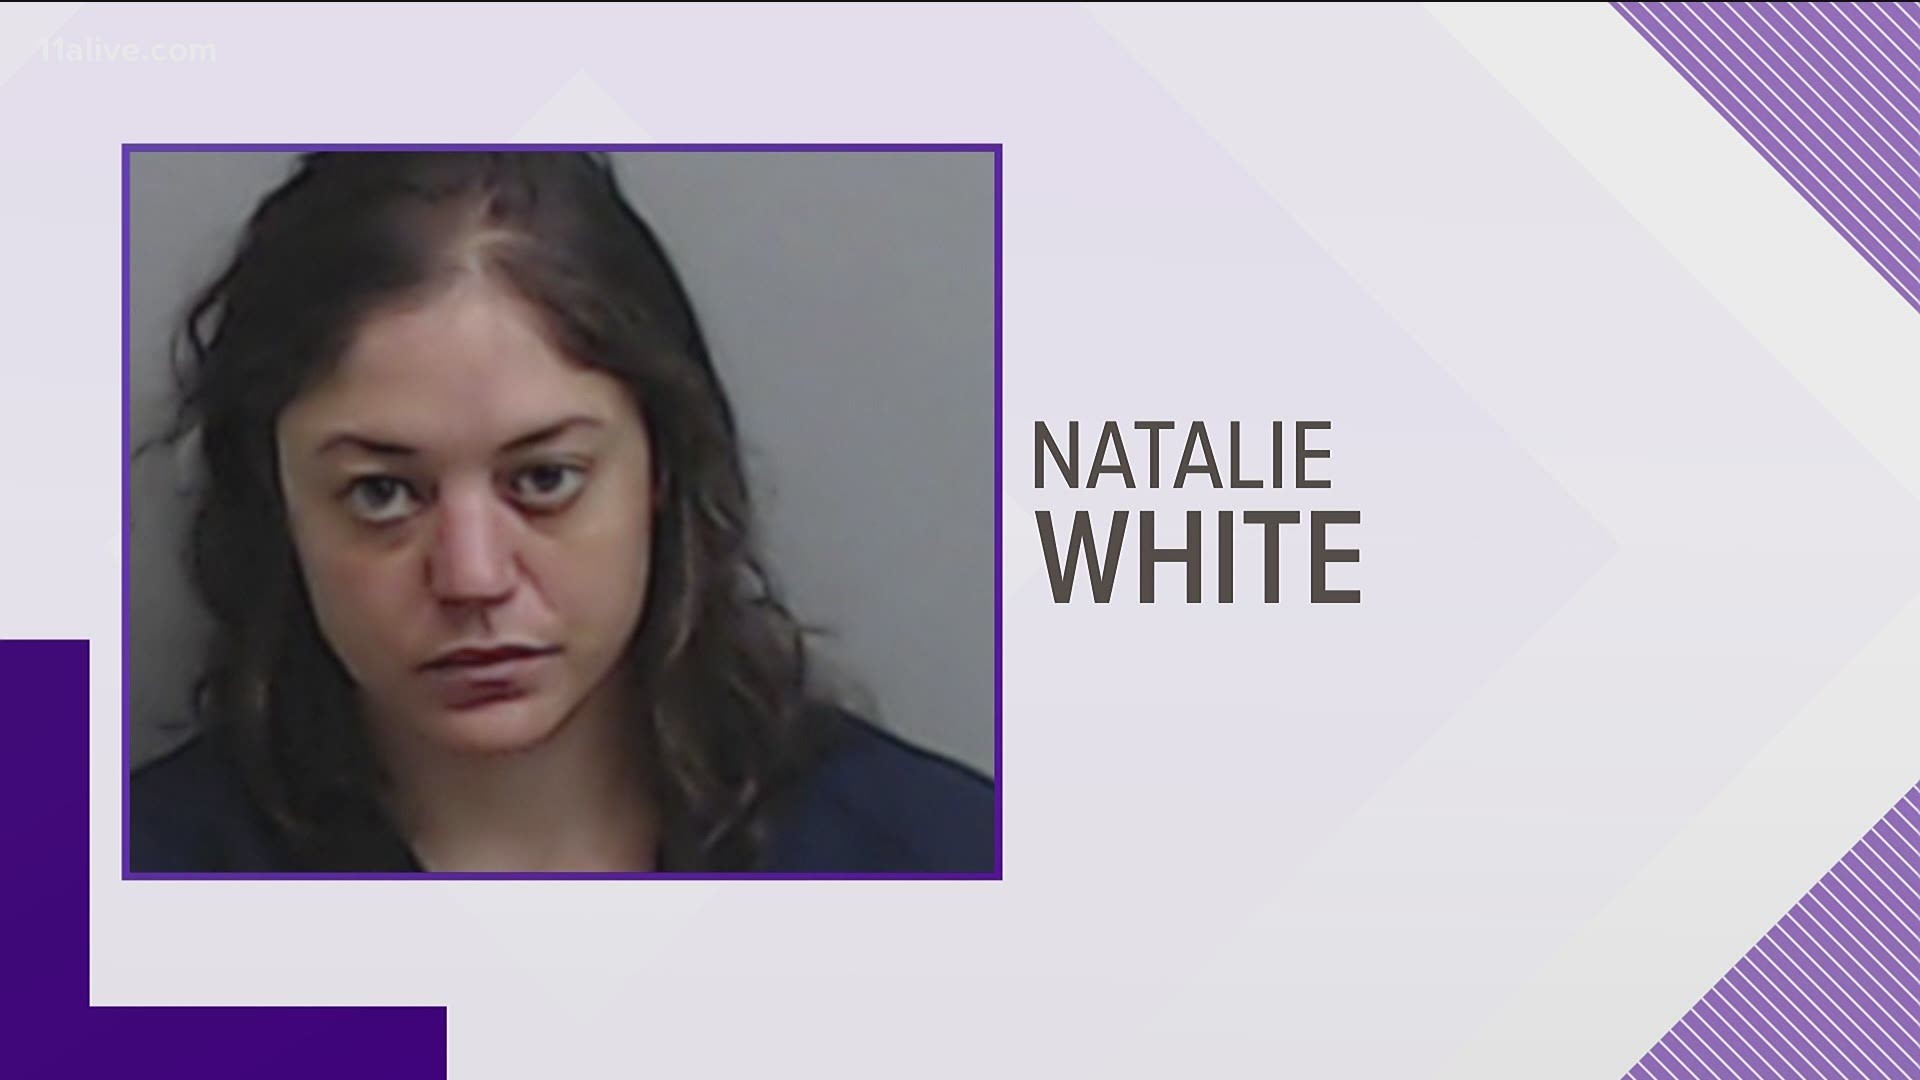 Natalie White was taken into custody Tuesday.